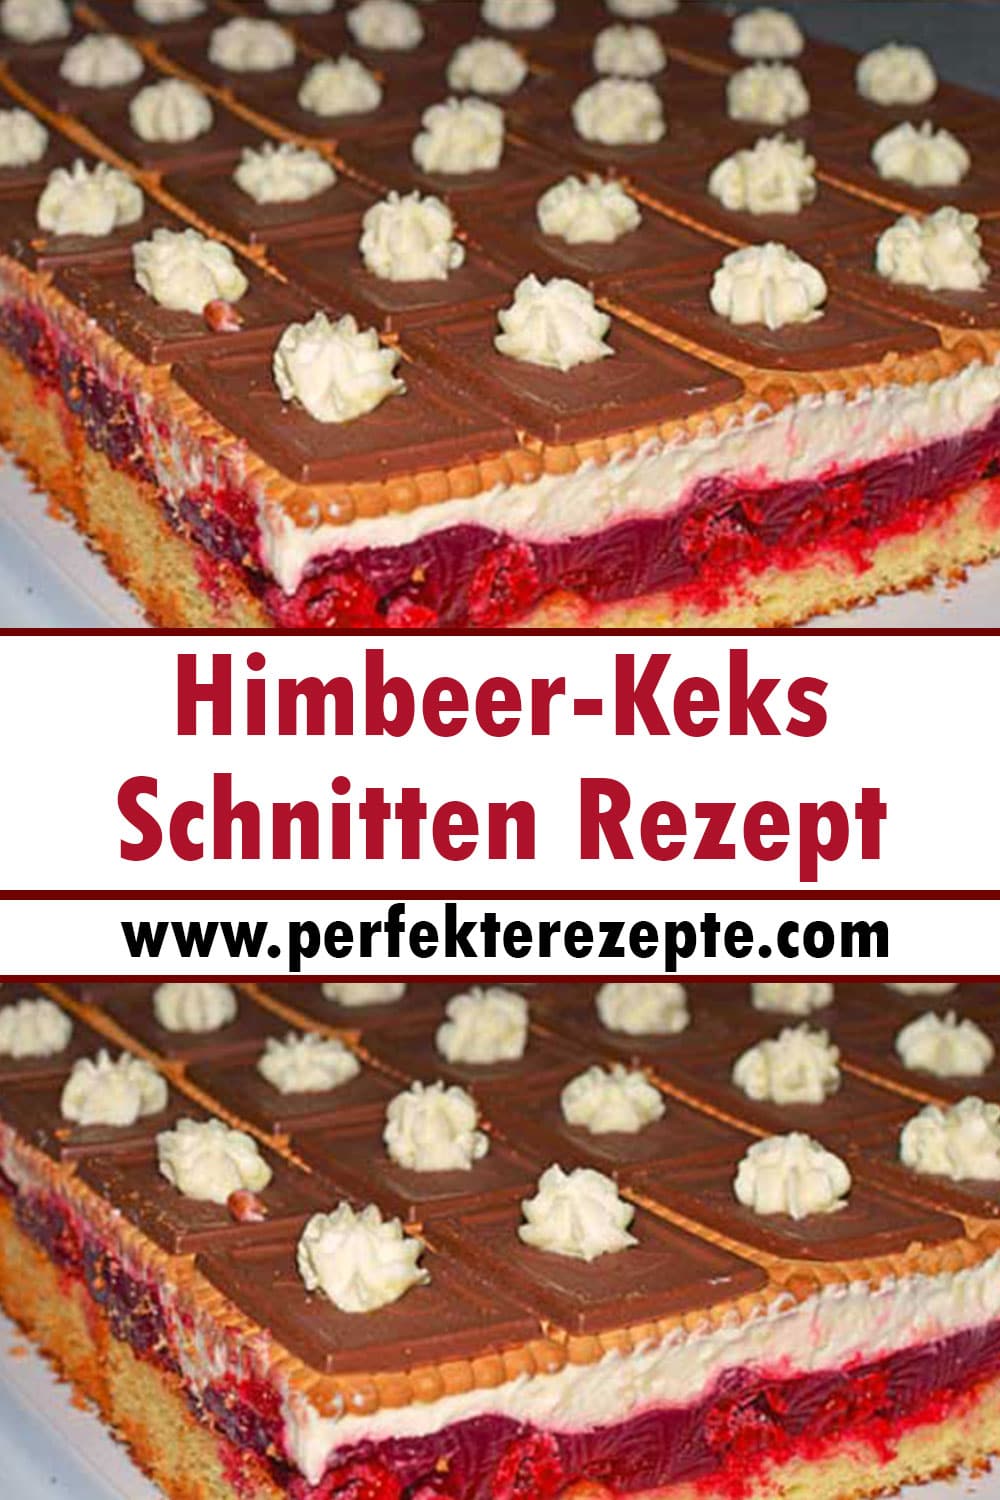 Himbeer-Keks-Schnitten Rezept